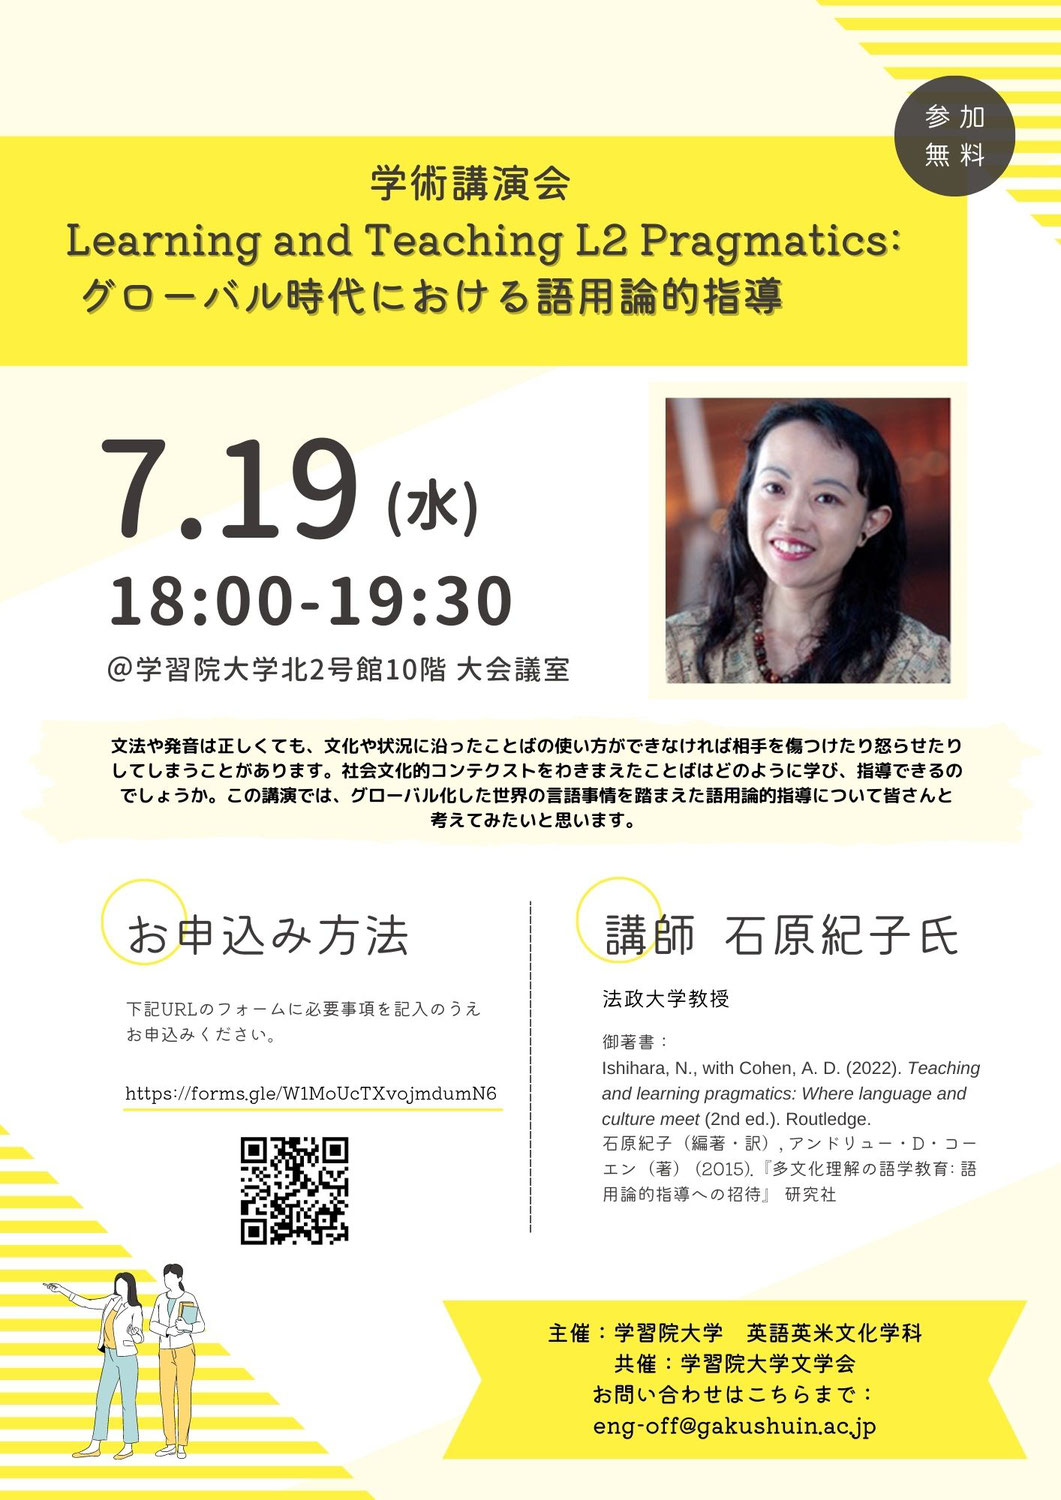 学術講演会「Learning and Teaching L2 Pragmatics: グローバル時代における語用論的指導」開催のお知らせ